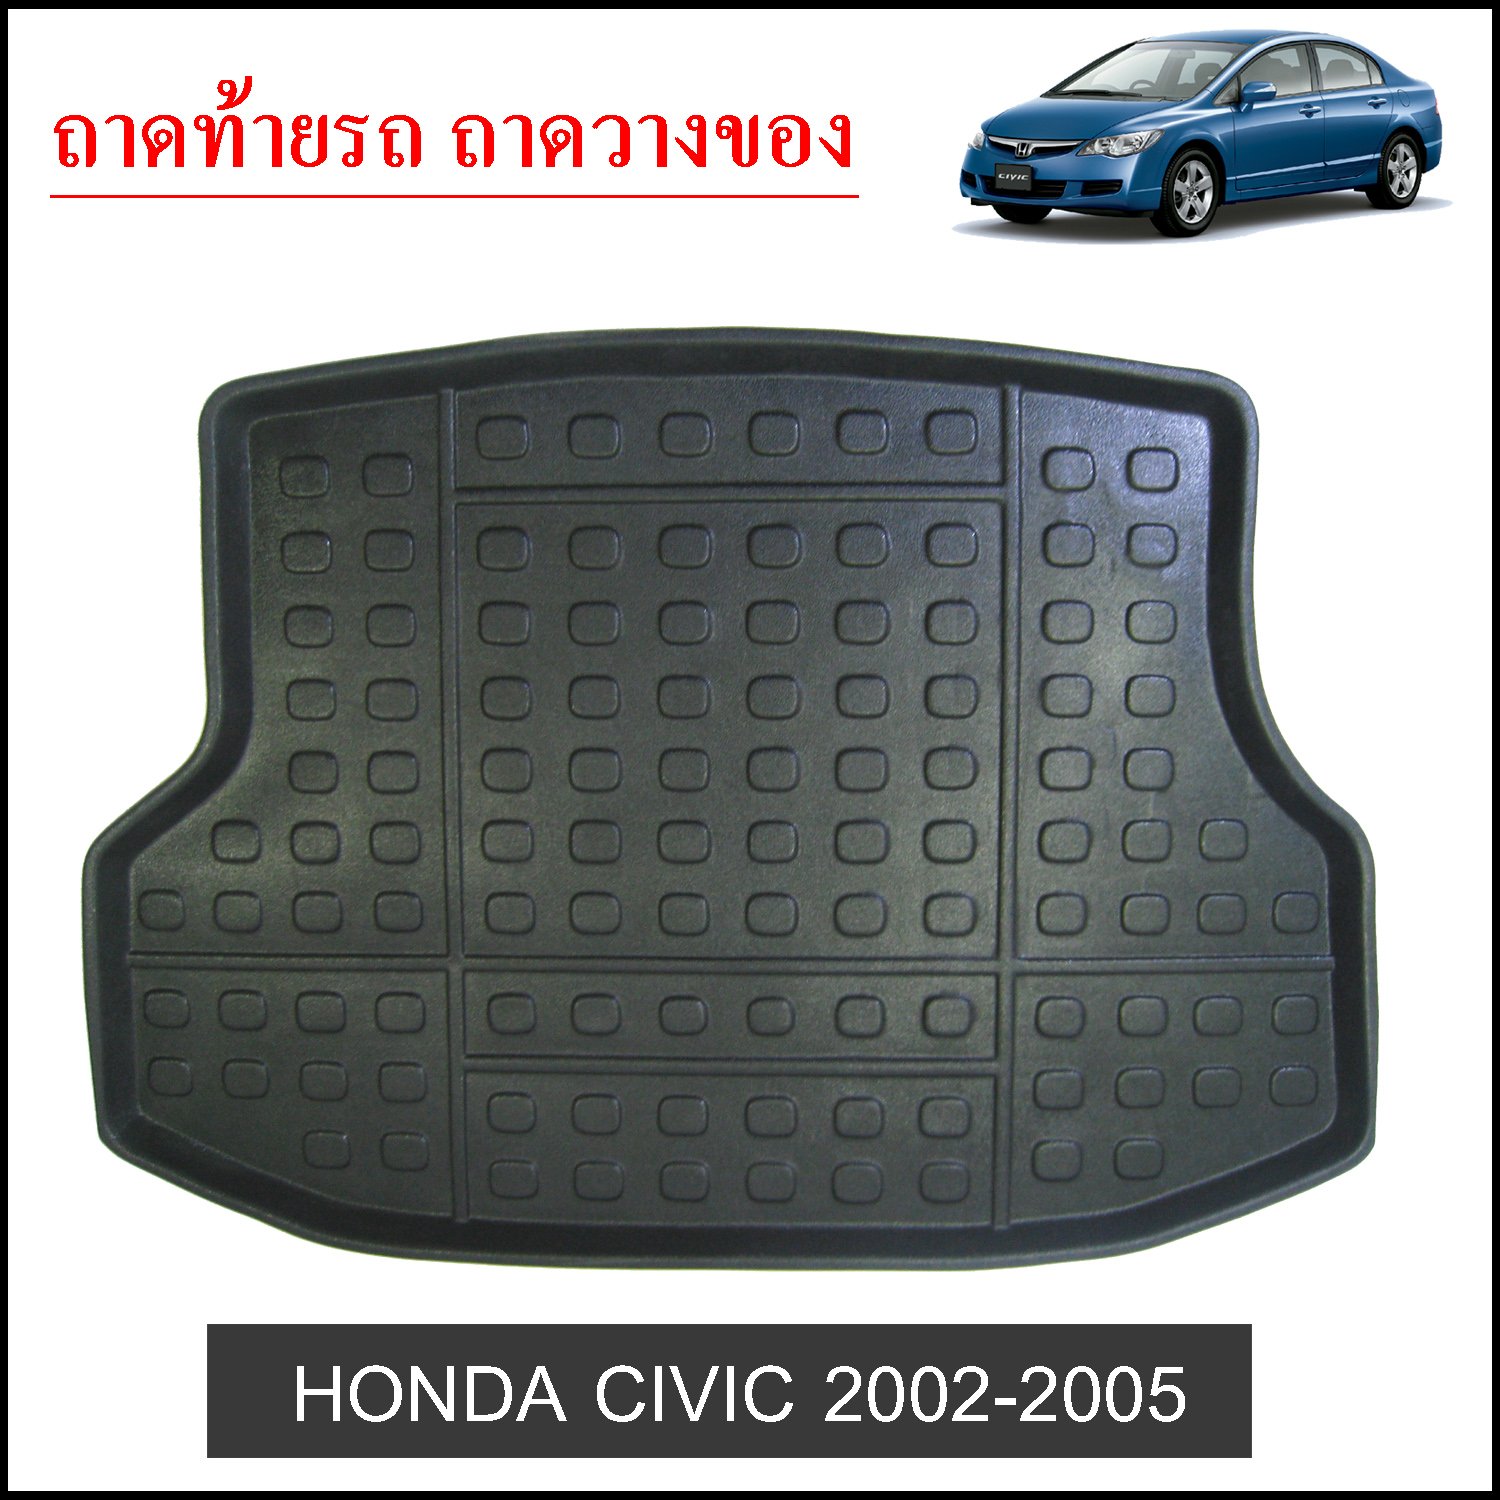 Honda Civic 2002-2005